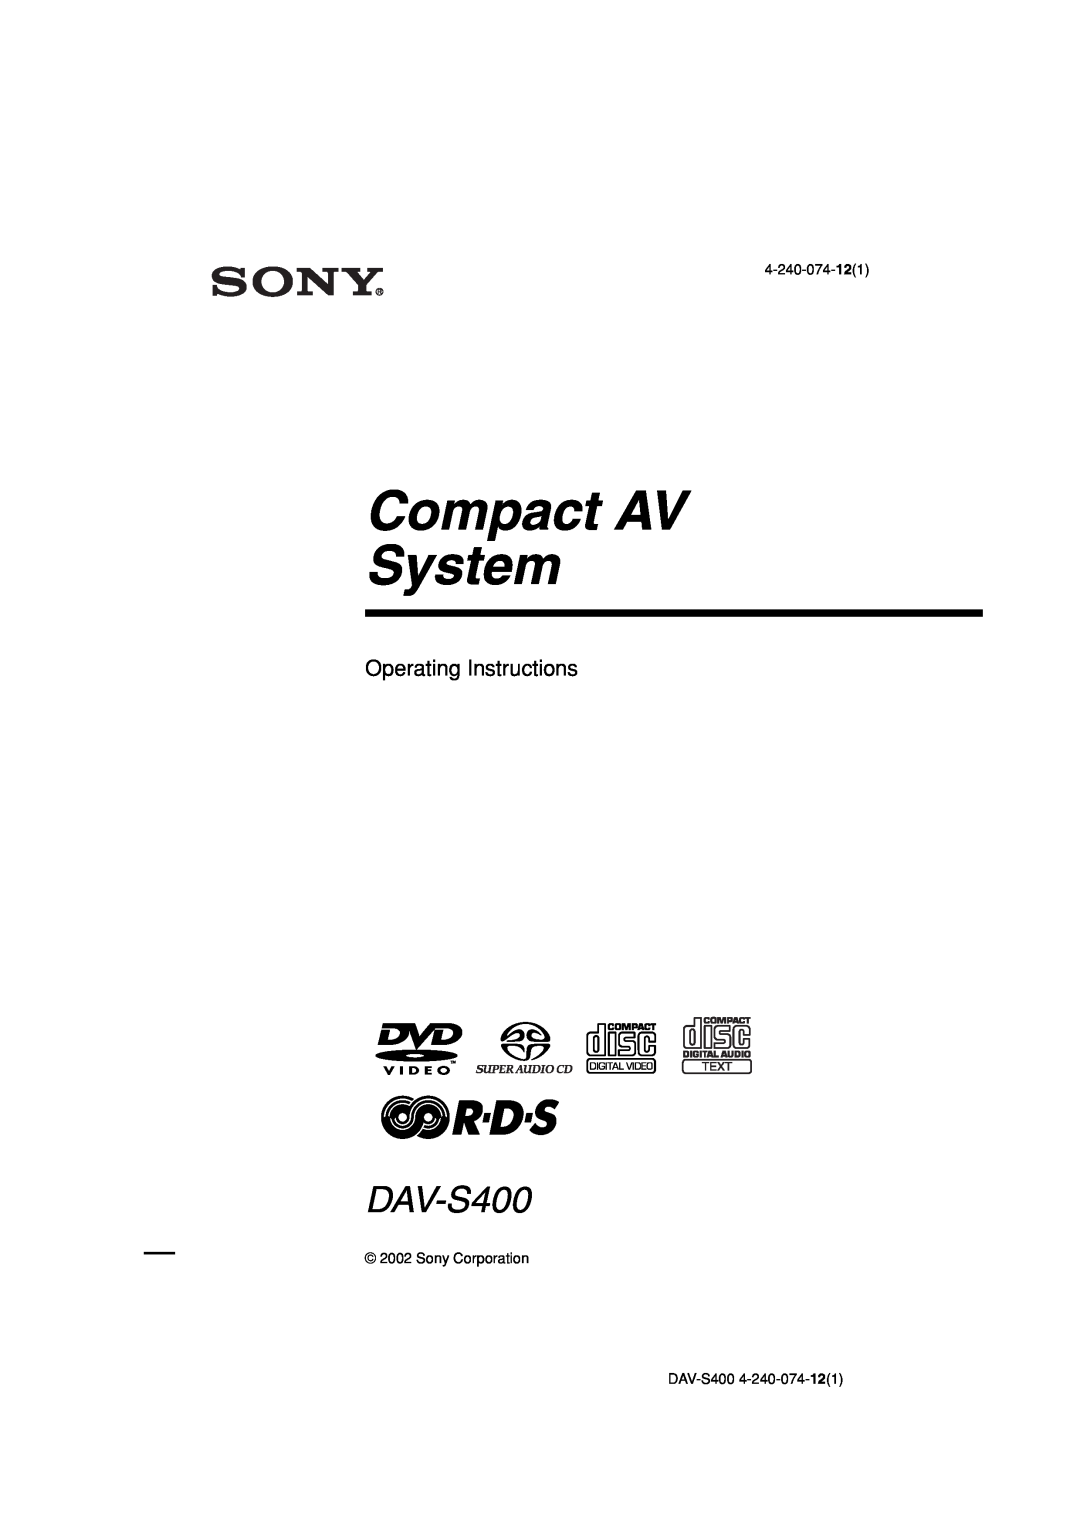 Sony DAV-S400 manual Operating Instructions, Compact AV System 